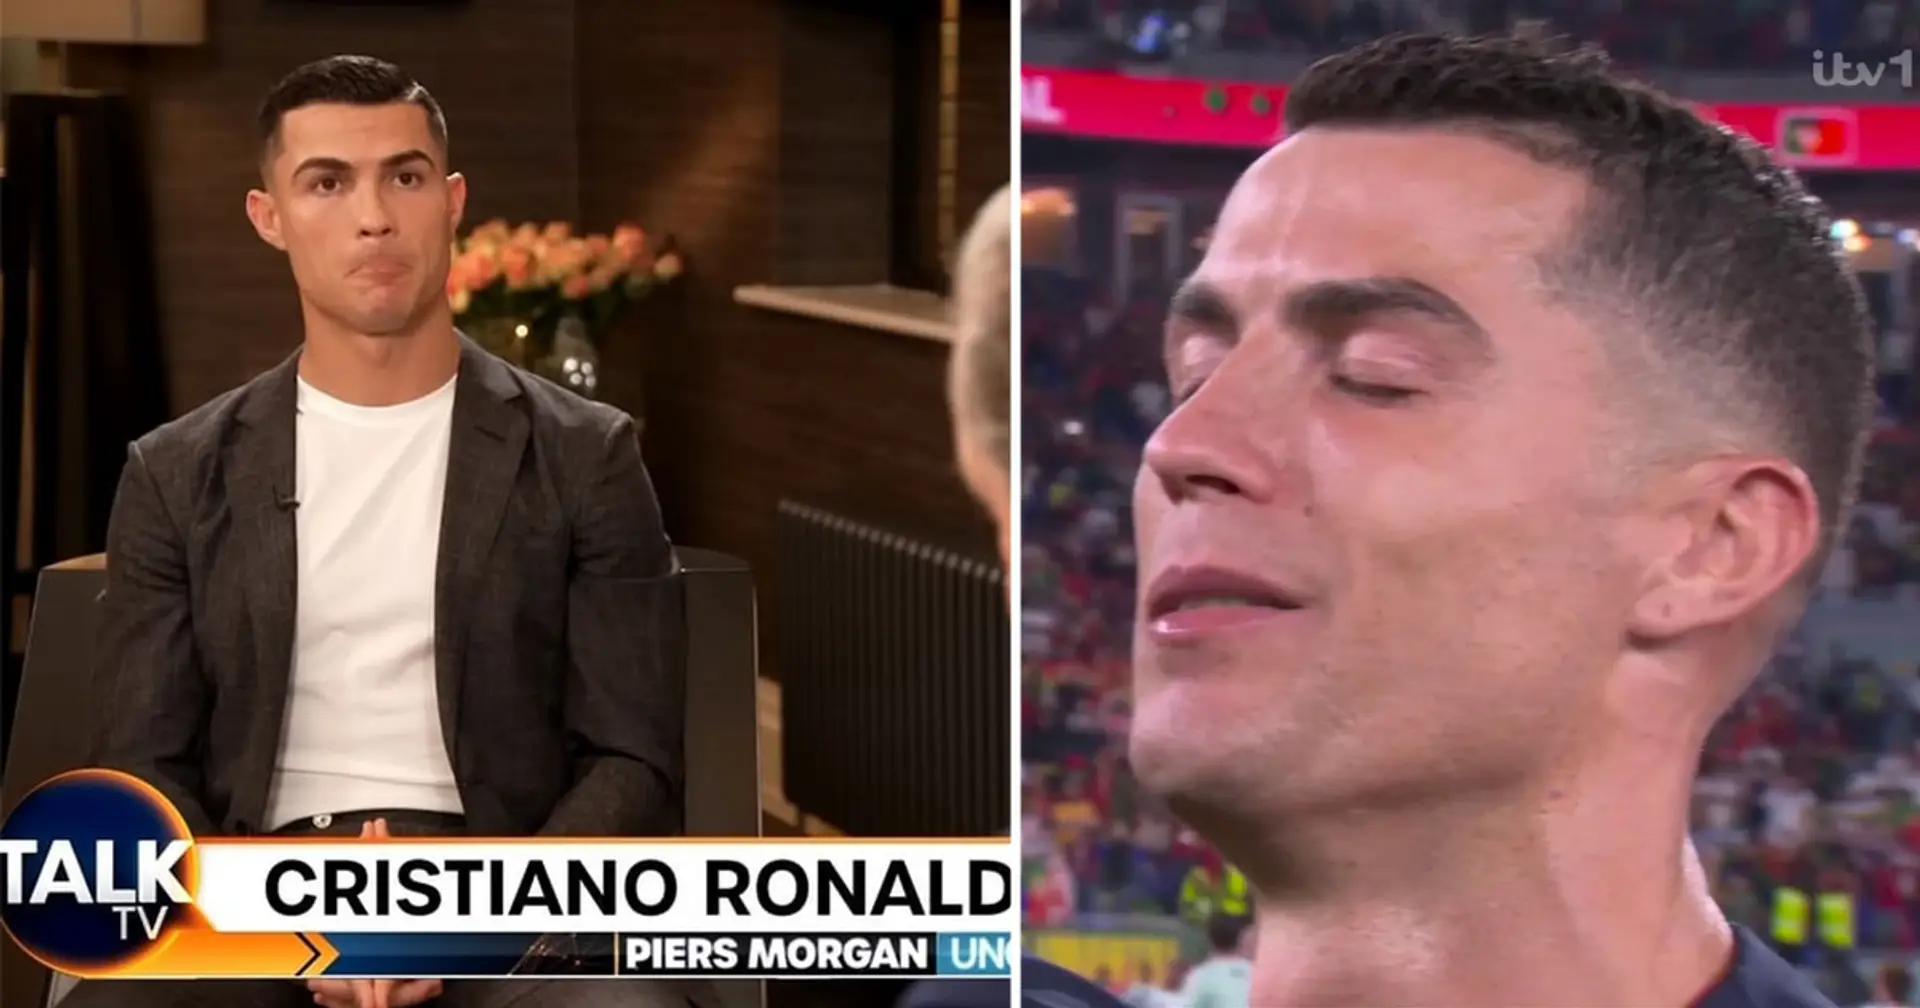 Visto: Cristiano Ronaldo derrama una lágrima ya que probablemente comienza su última Copa del Mundo